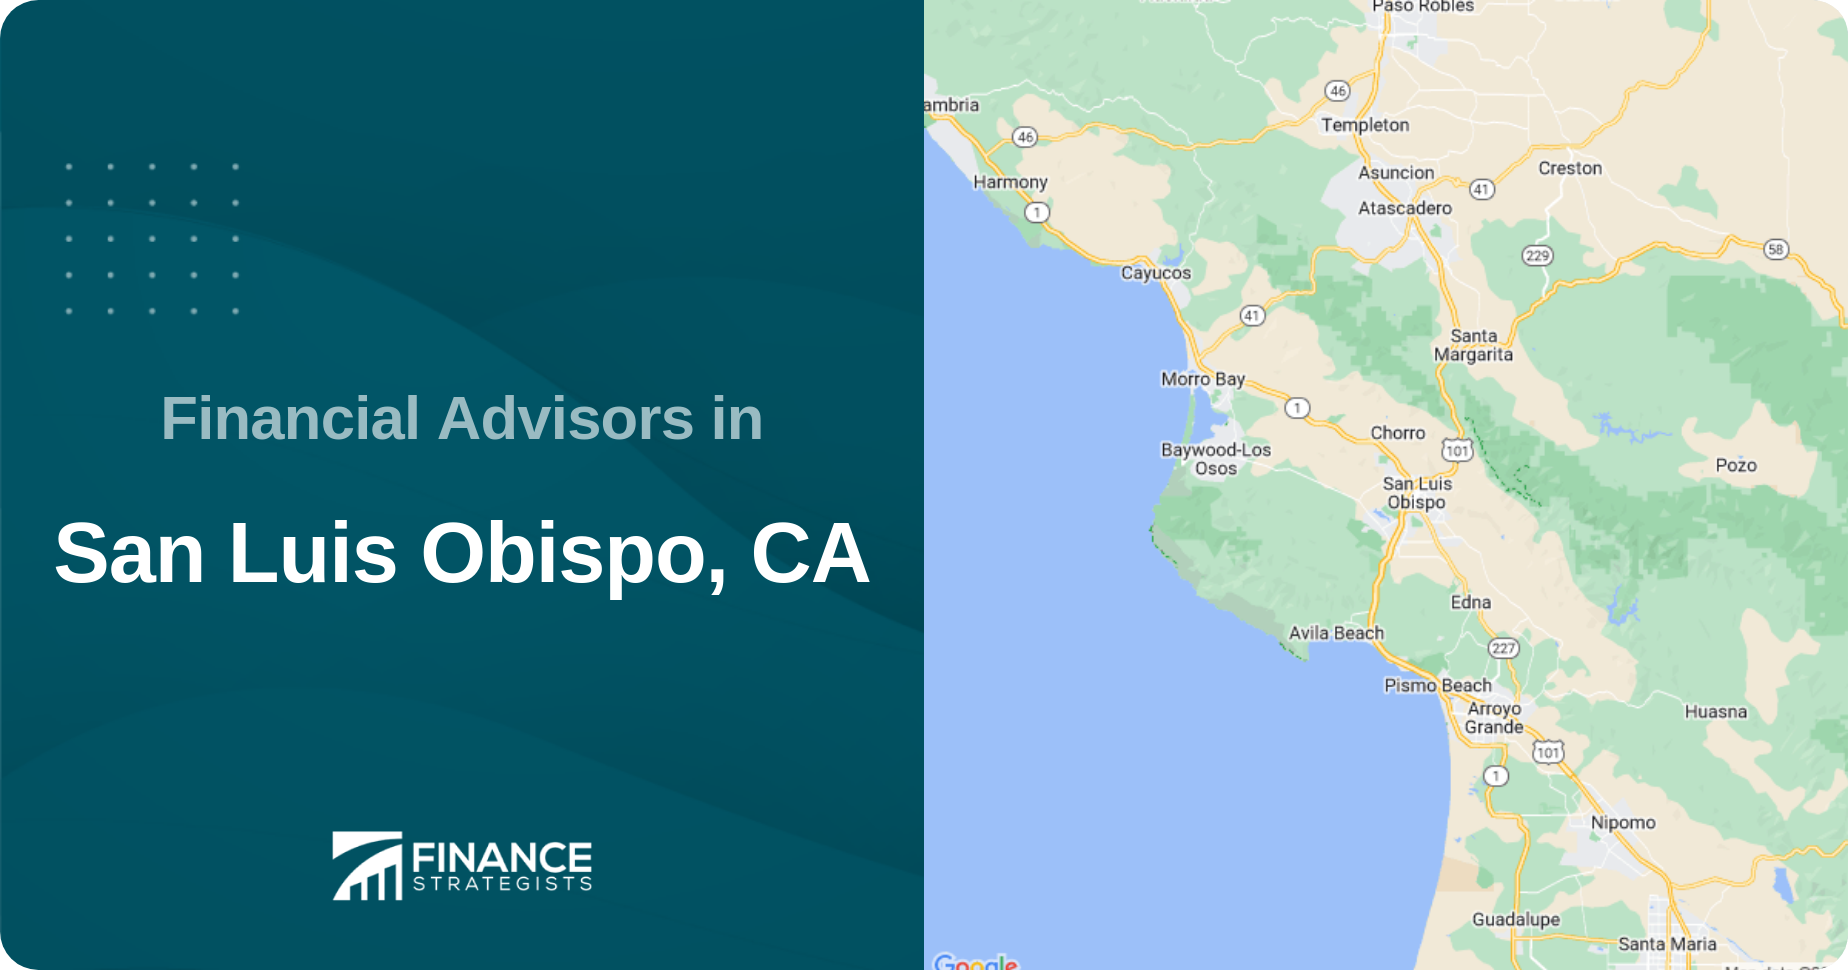 Financial Advisors in San Luis Obispo, CA